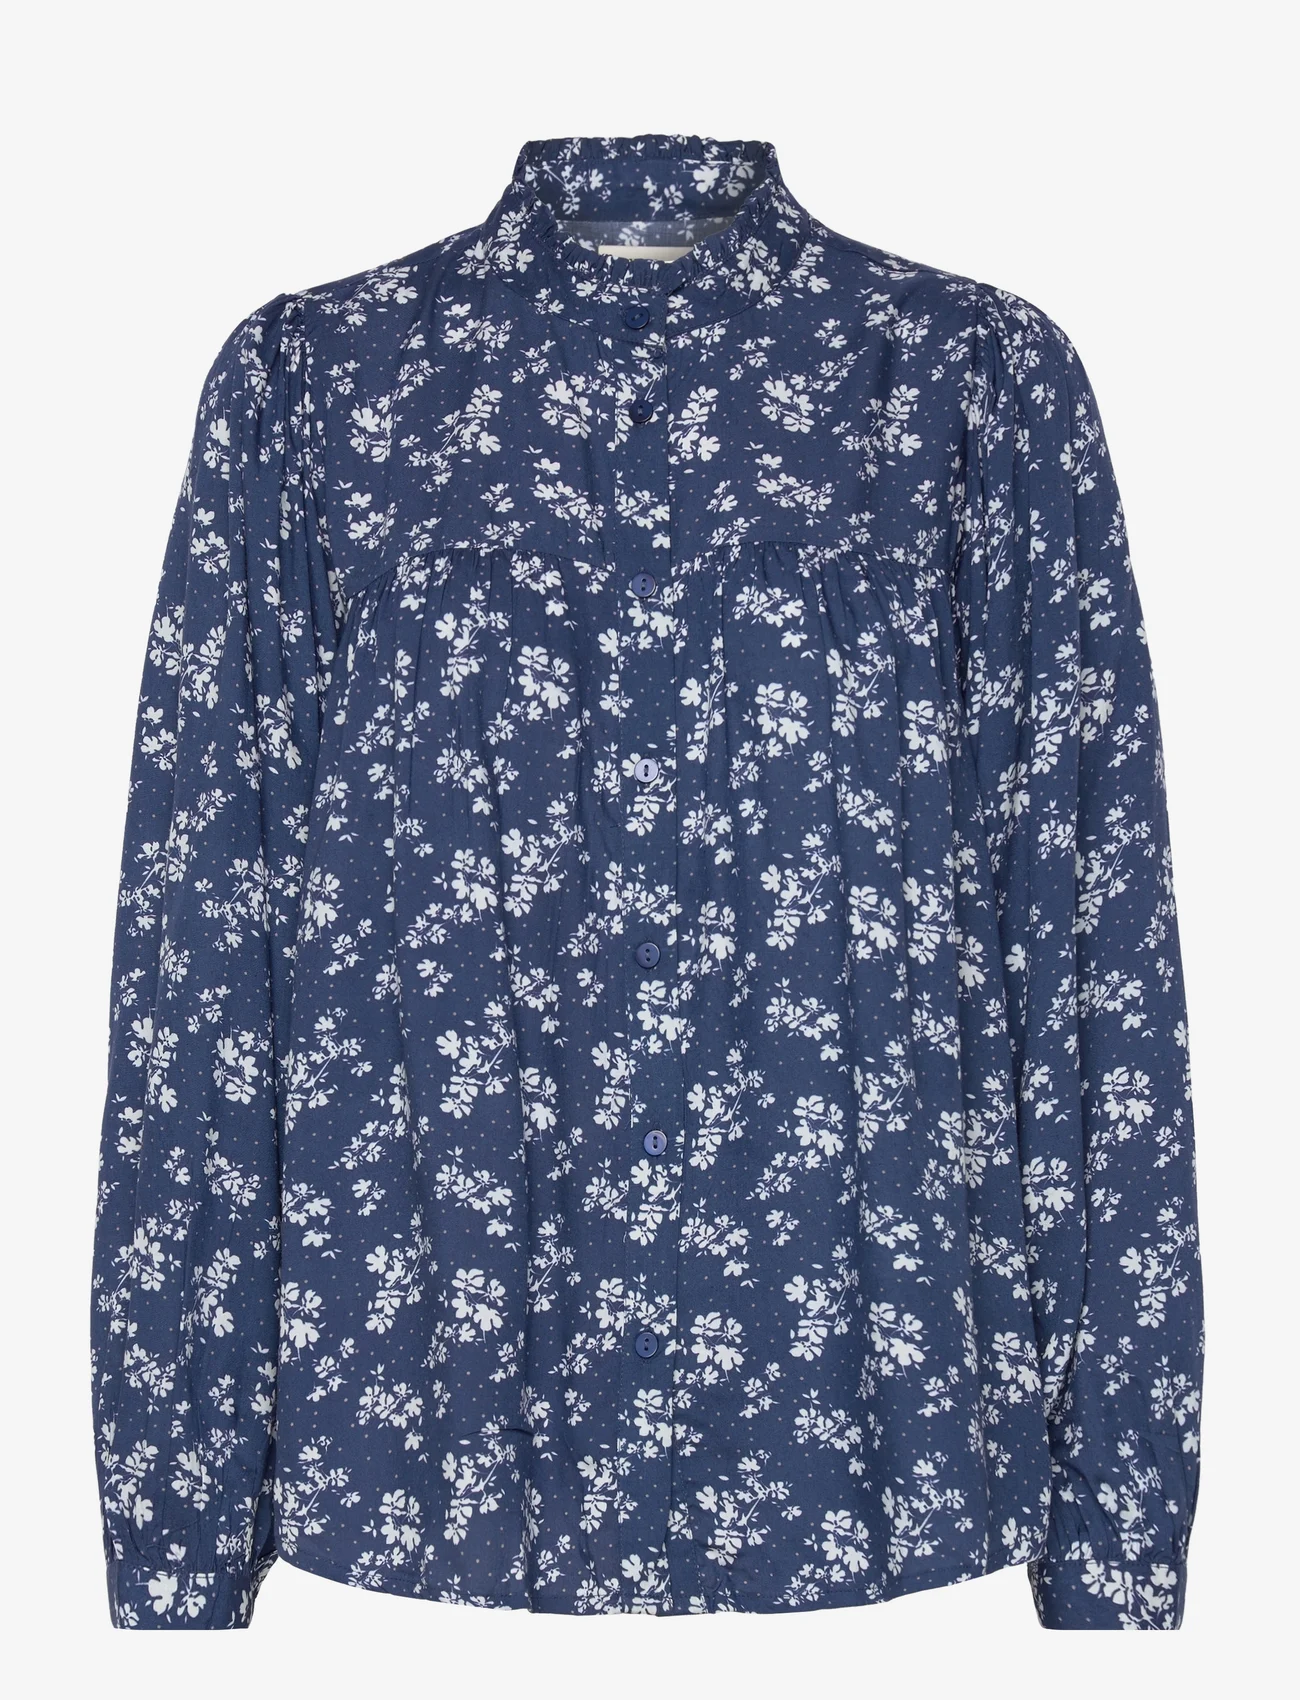 Lollys Laundry - Cara Shirt - langärmlige hemden - 23 dark blue - 0